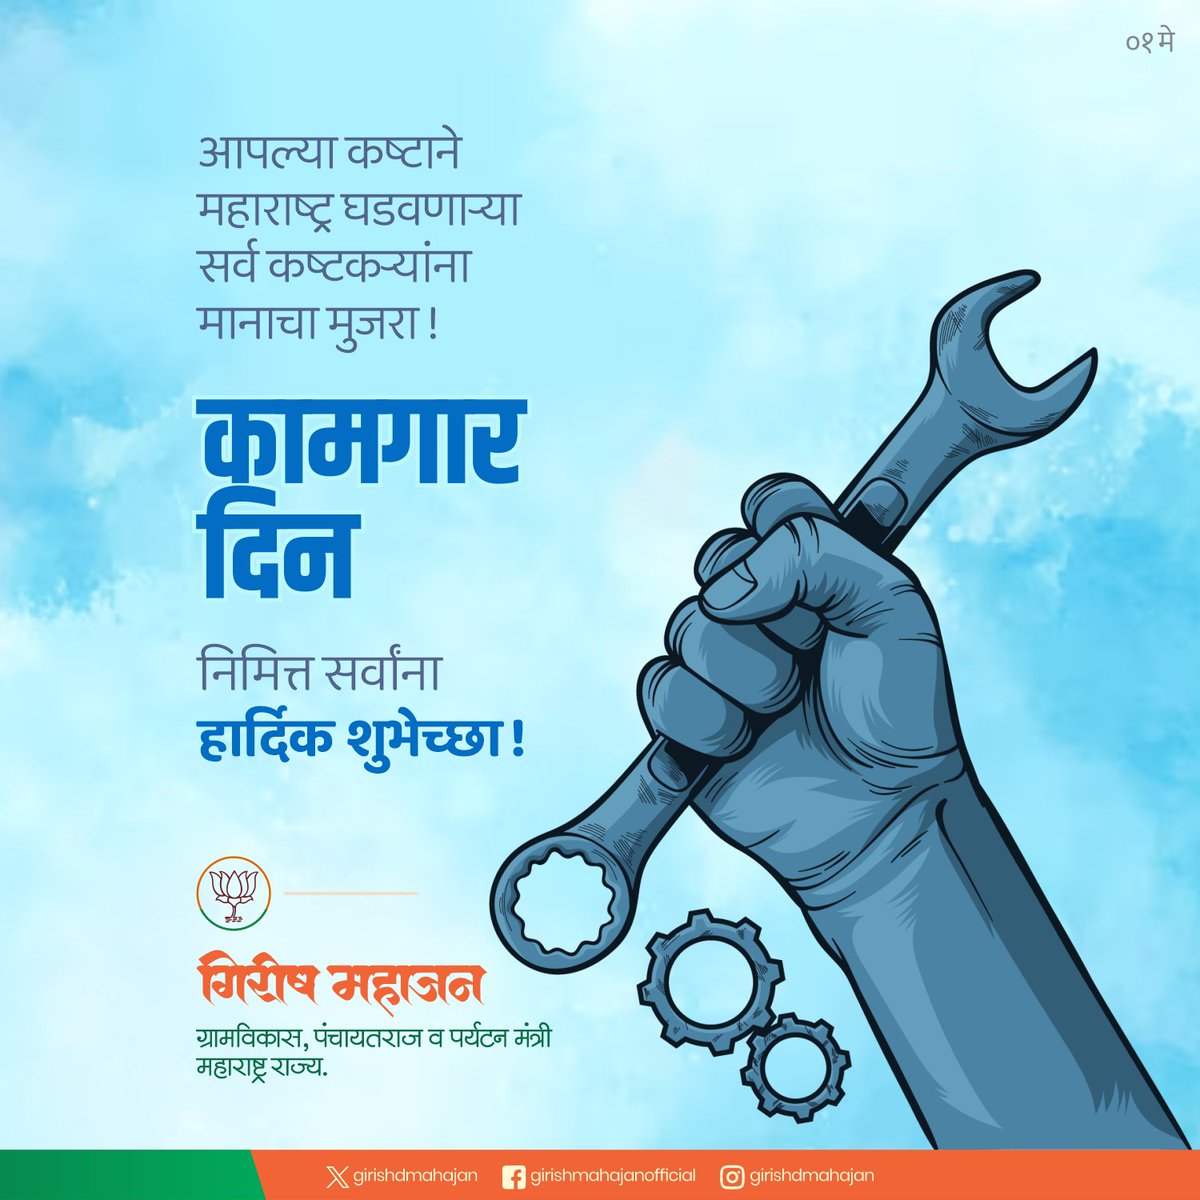 आपल्या कष्टाने महाराष्ट्र घडवणाऱ्या सर्व कष्टकऱ्यांना मानाचा मुजरा ! कामगार दिनानिमित्त सर्वांना हार्दिक शुभेच्छा ! #LabourDay #कामगार_दिन #InternationalLabourDay #Maharashtra